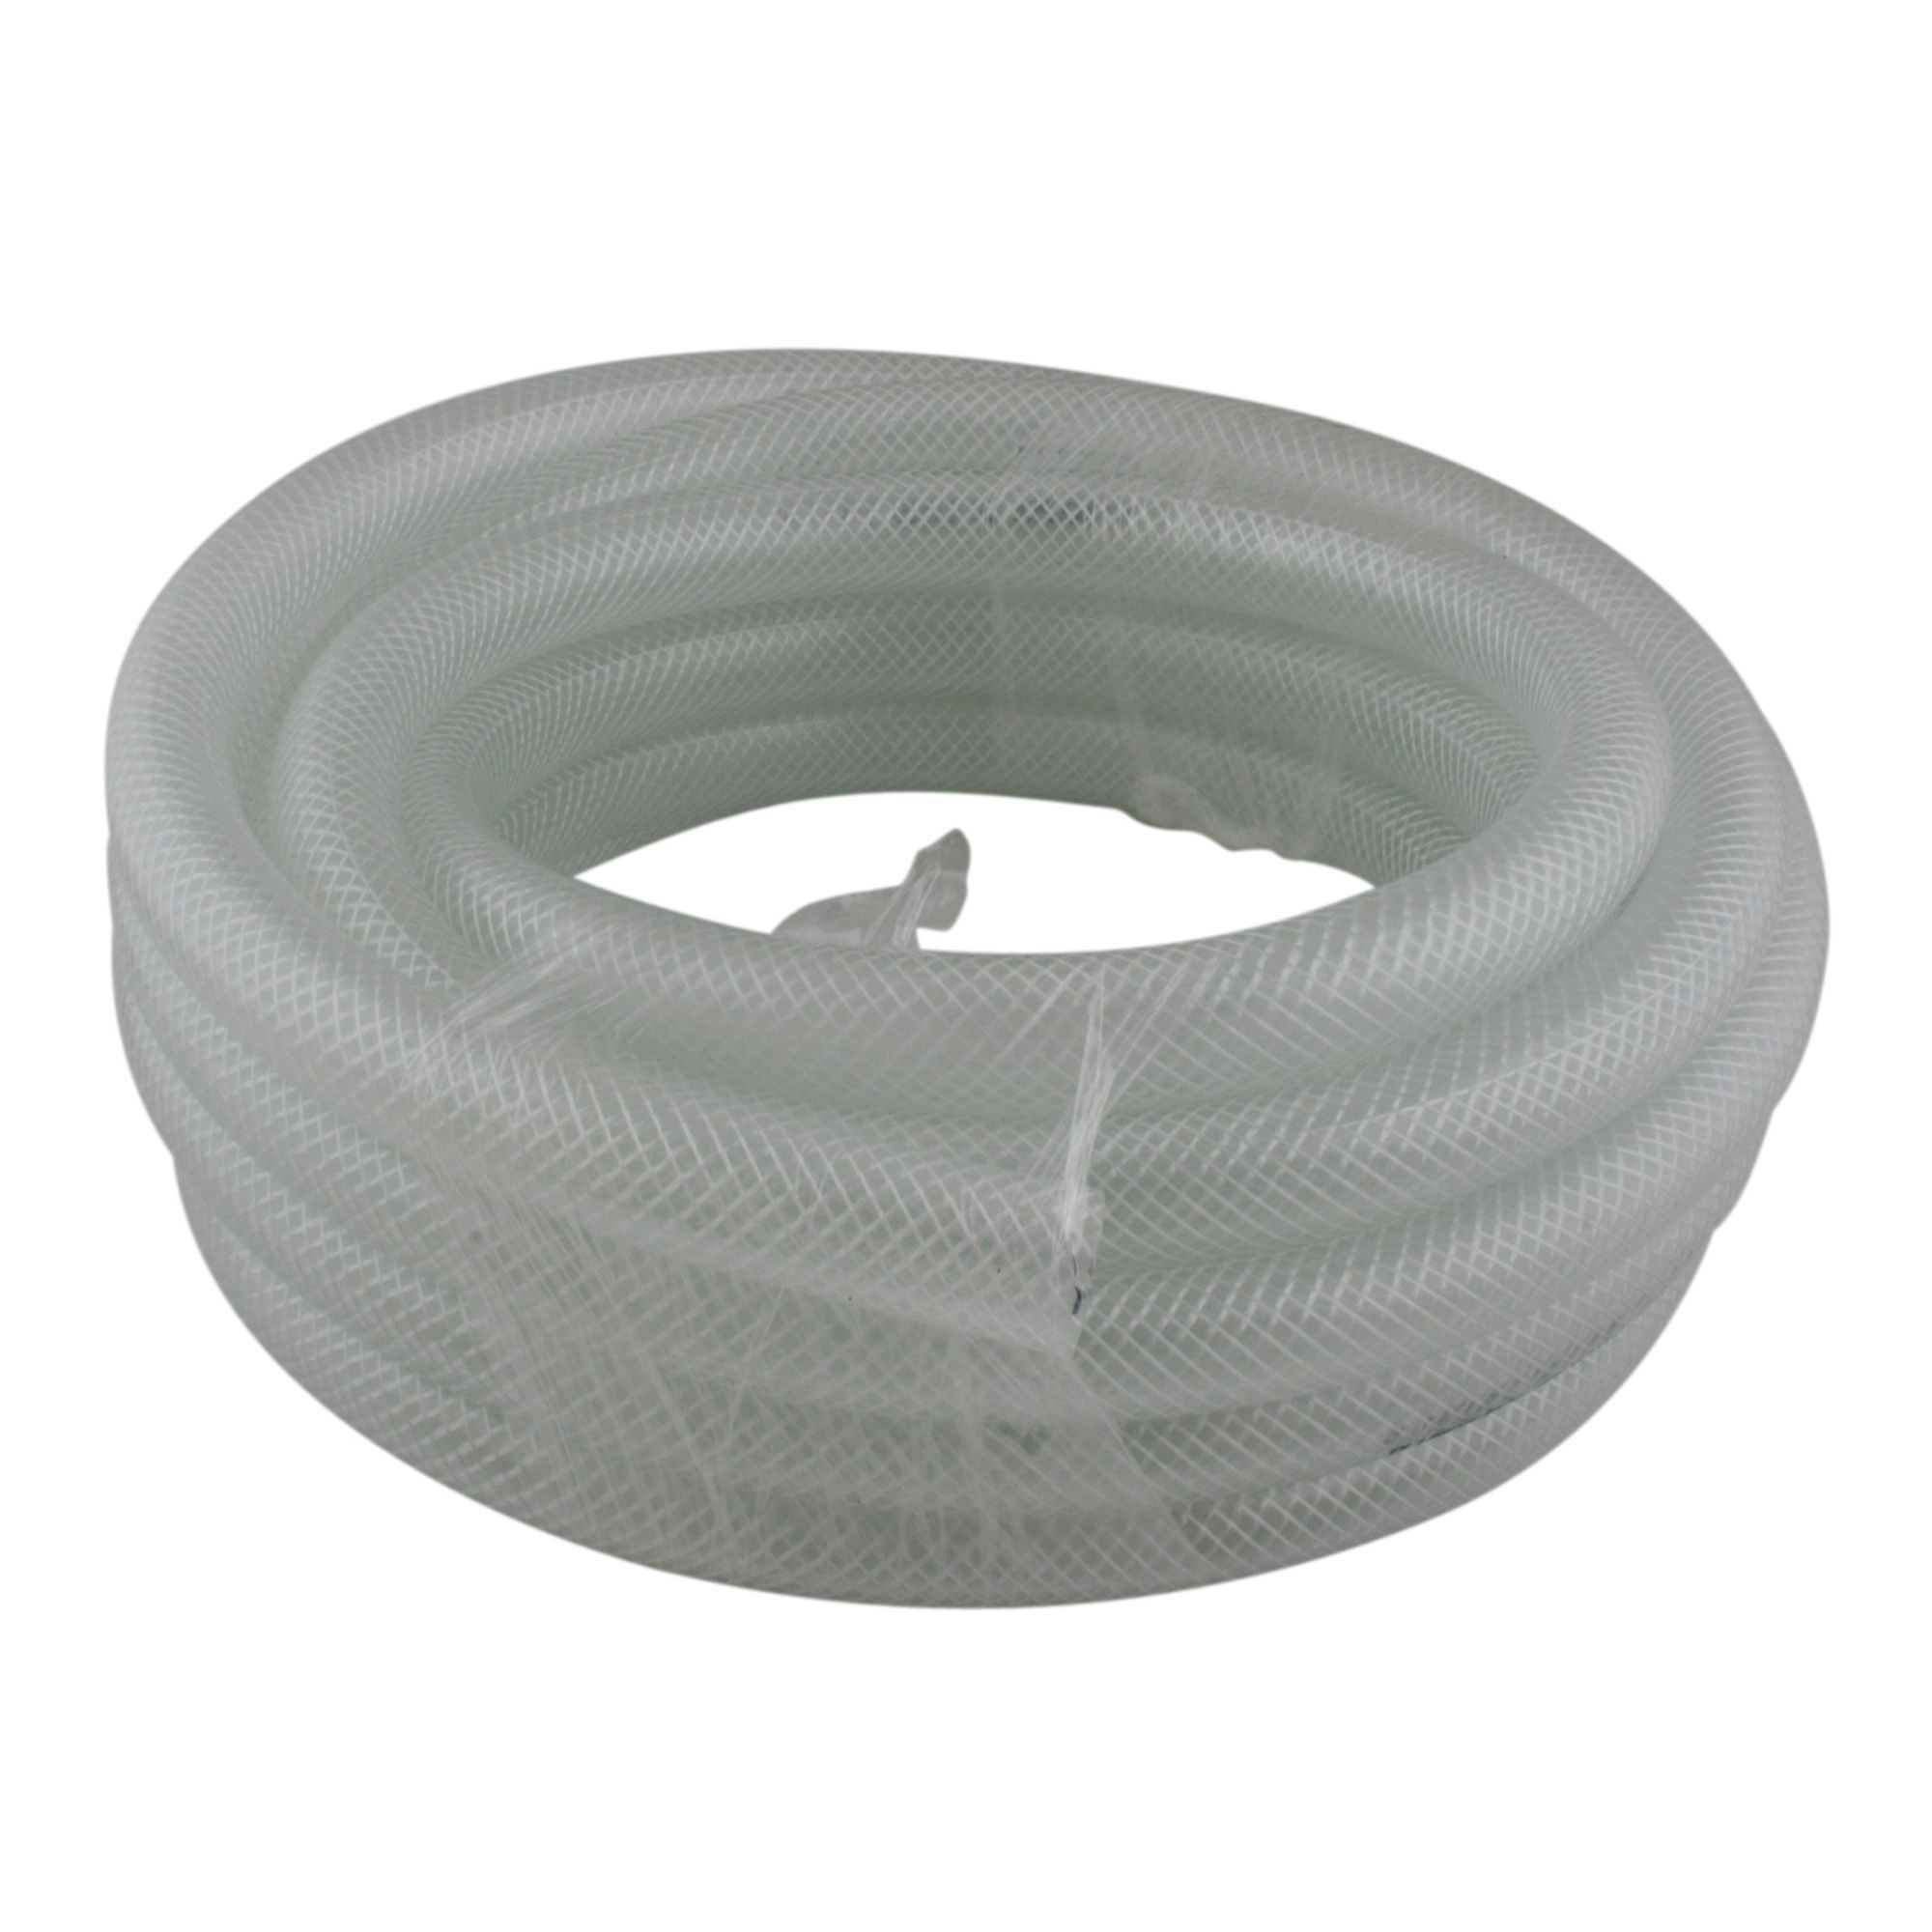 Tuyau pneumatique PVC diamètre 8mm - Longueur 1 mètre par CONSOGARAGE -  1,79 € TTC